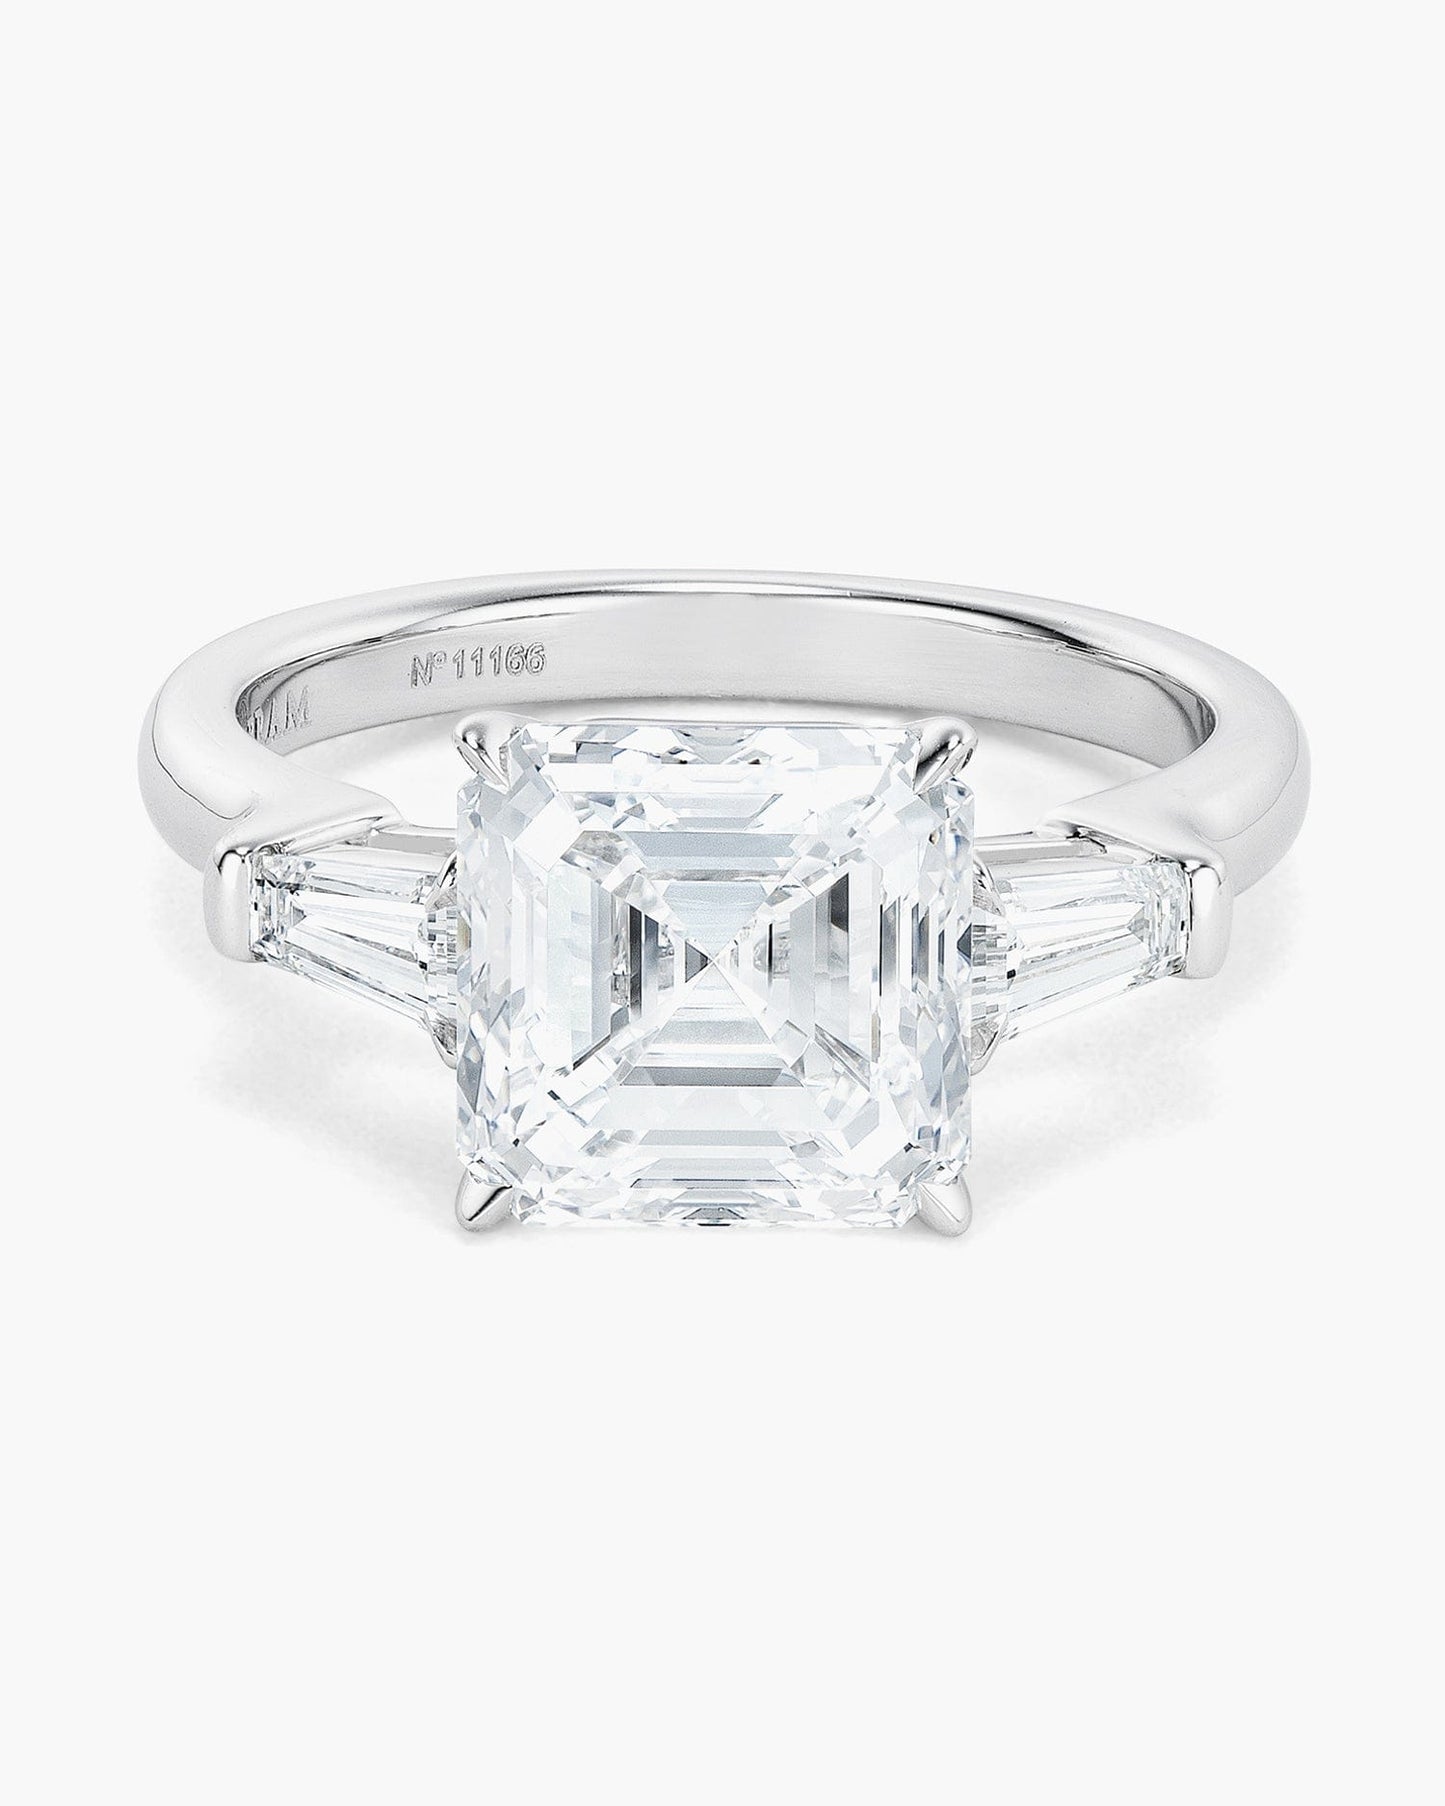 3.51 carat Asscher Cut Diamond Ring